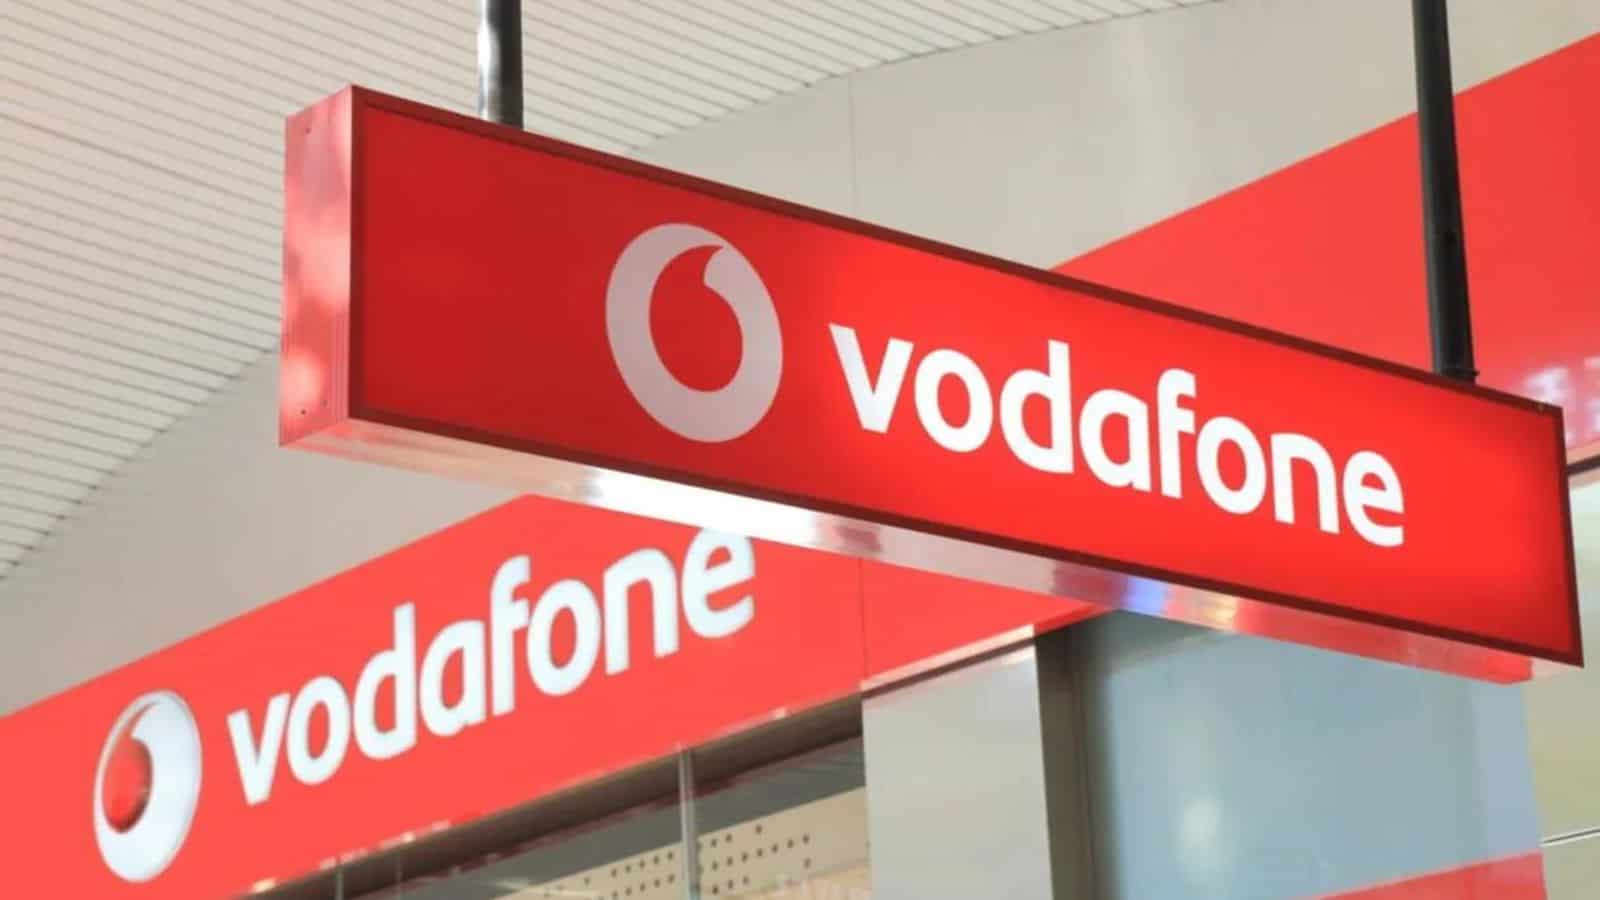 Vodafone e CoopVoce hanno le migliori offerte: ecco fino a 200 GB